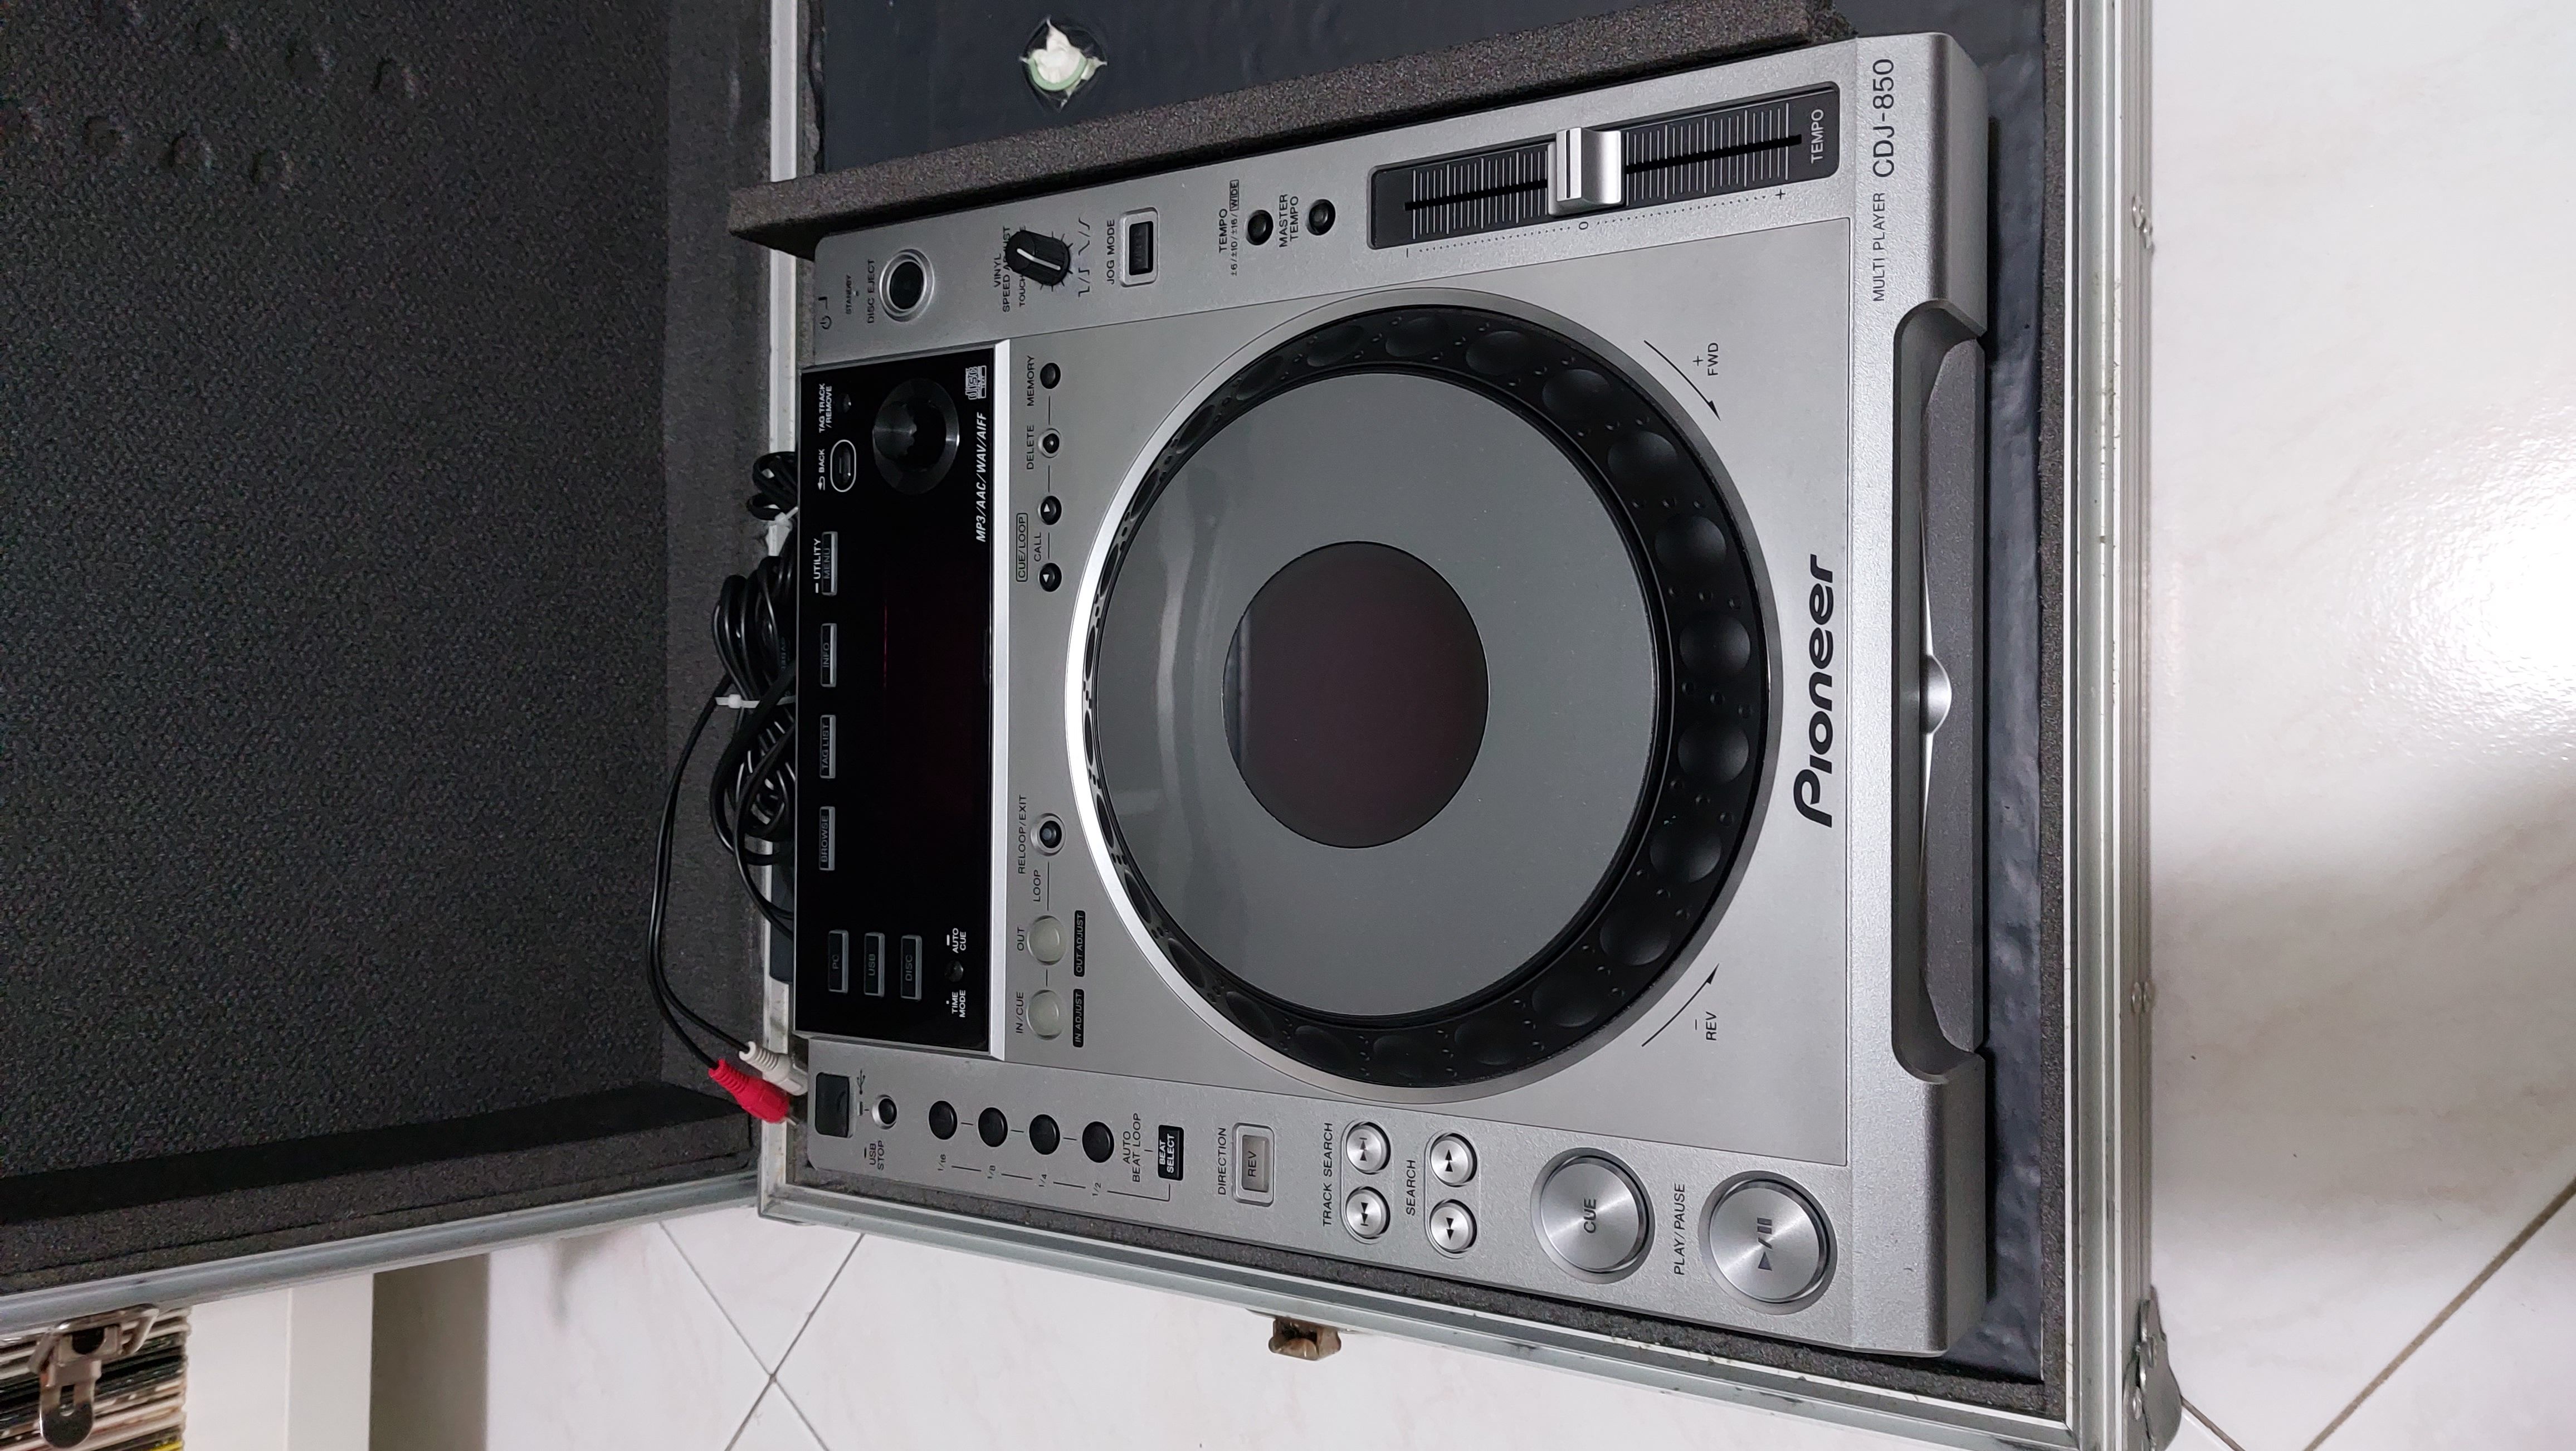 Console pioneer dj + mixer + case